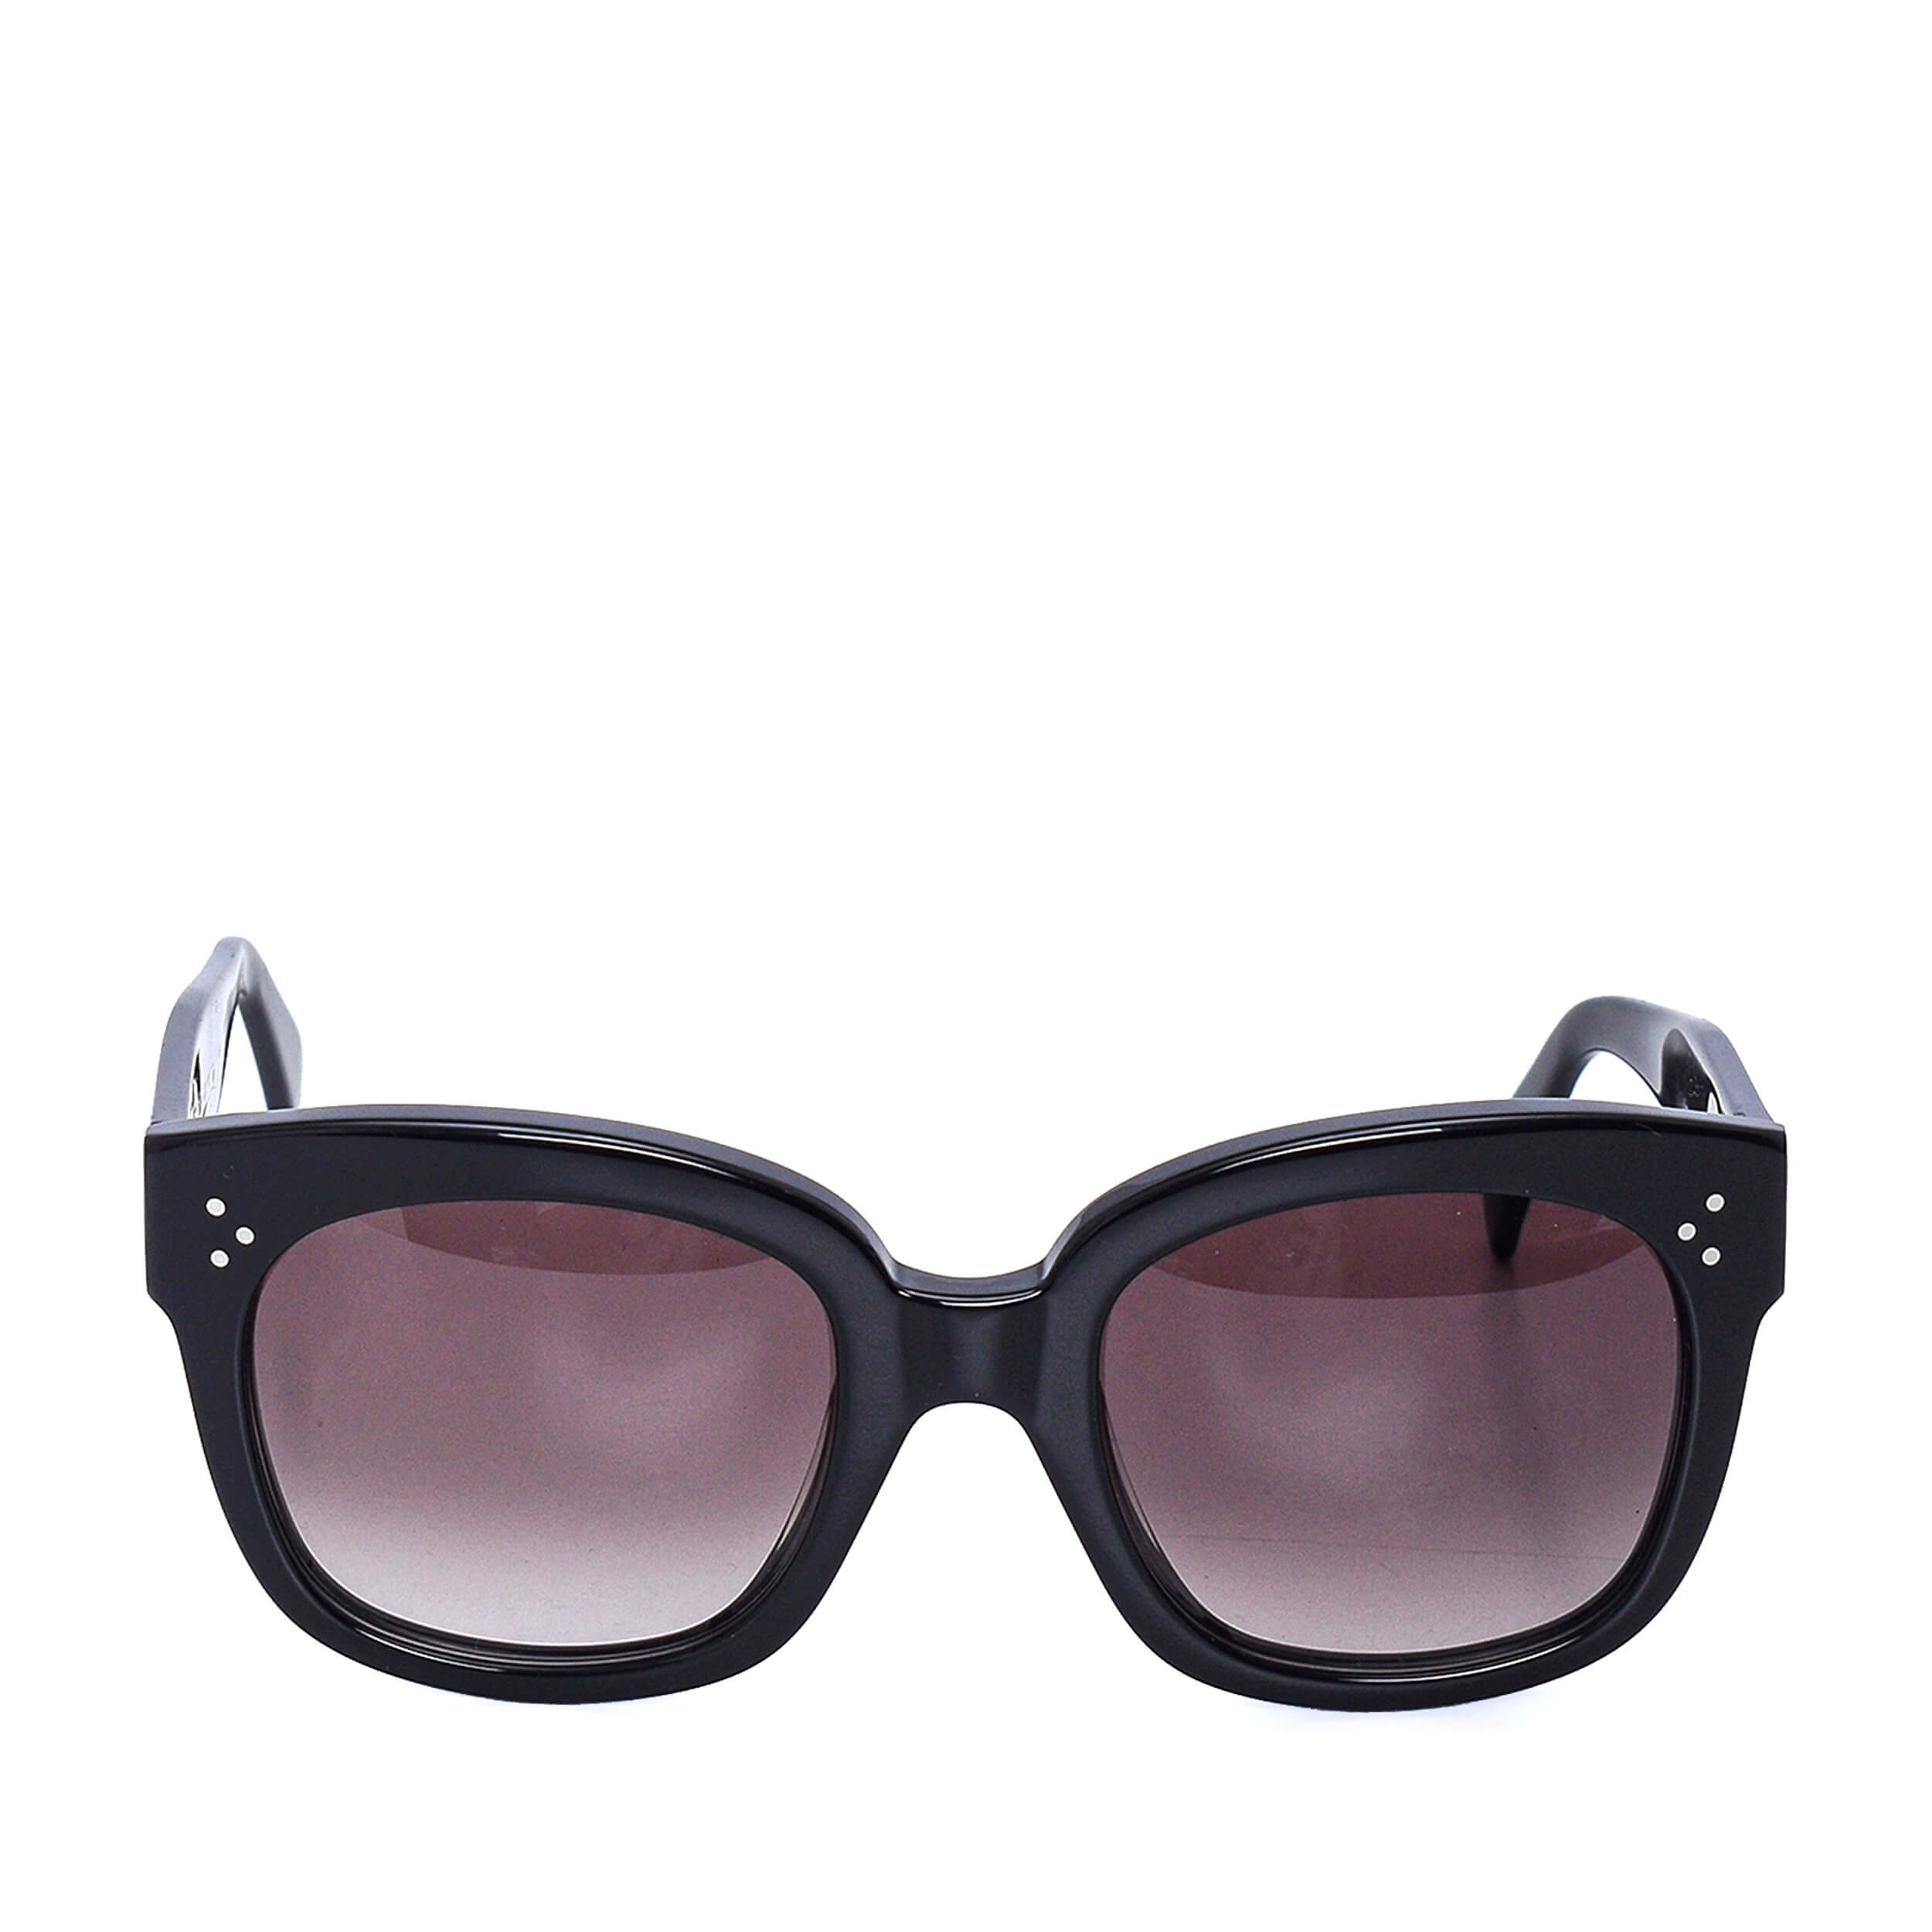 Celine - Black Acetate Classic Sunglasses